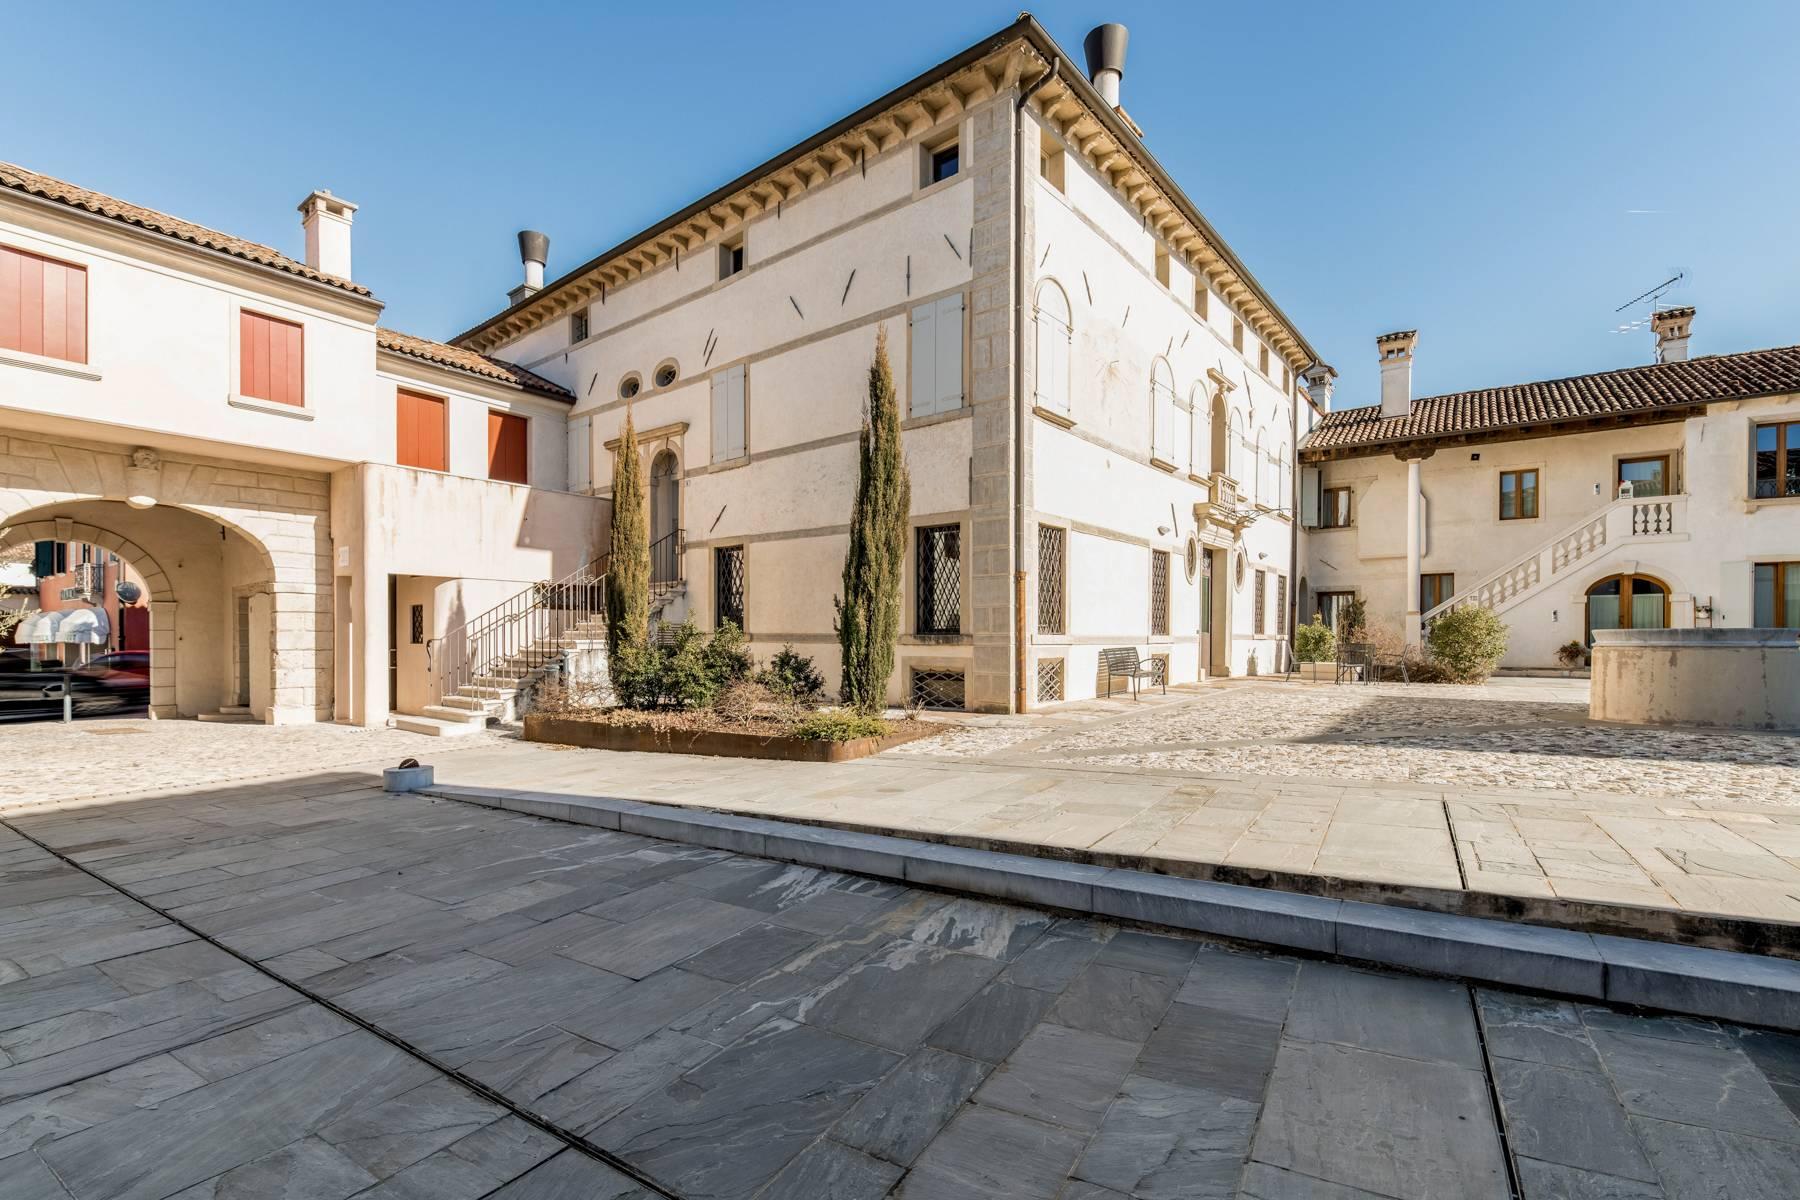 Penthouse de luxe dans une villa vénitienne du 17ème siècle entièrement rénovée - 20